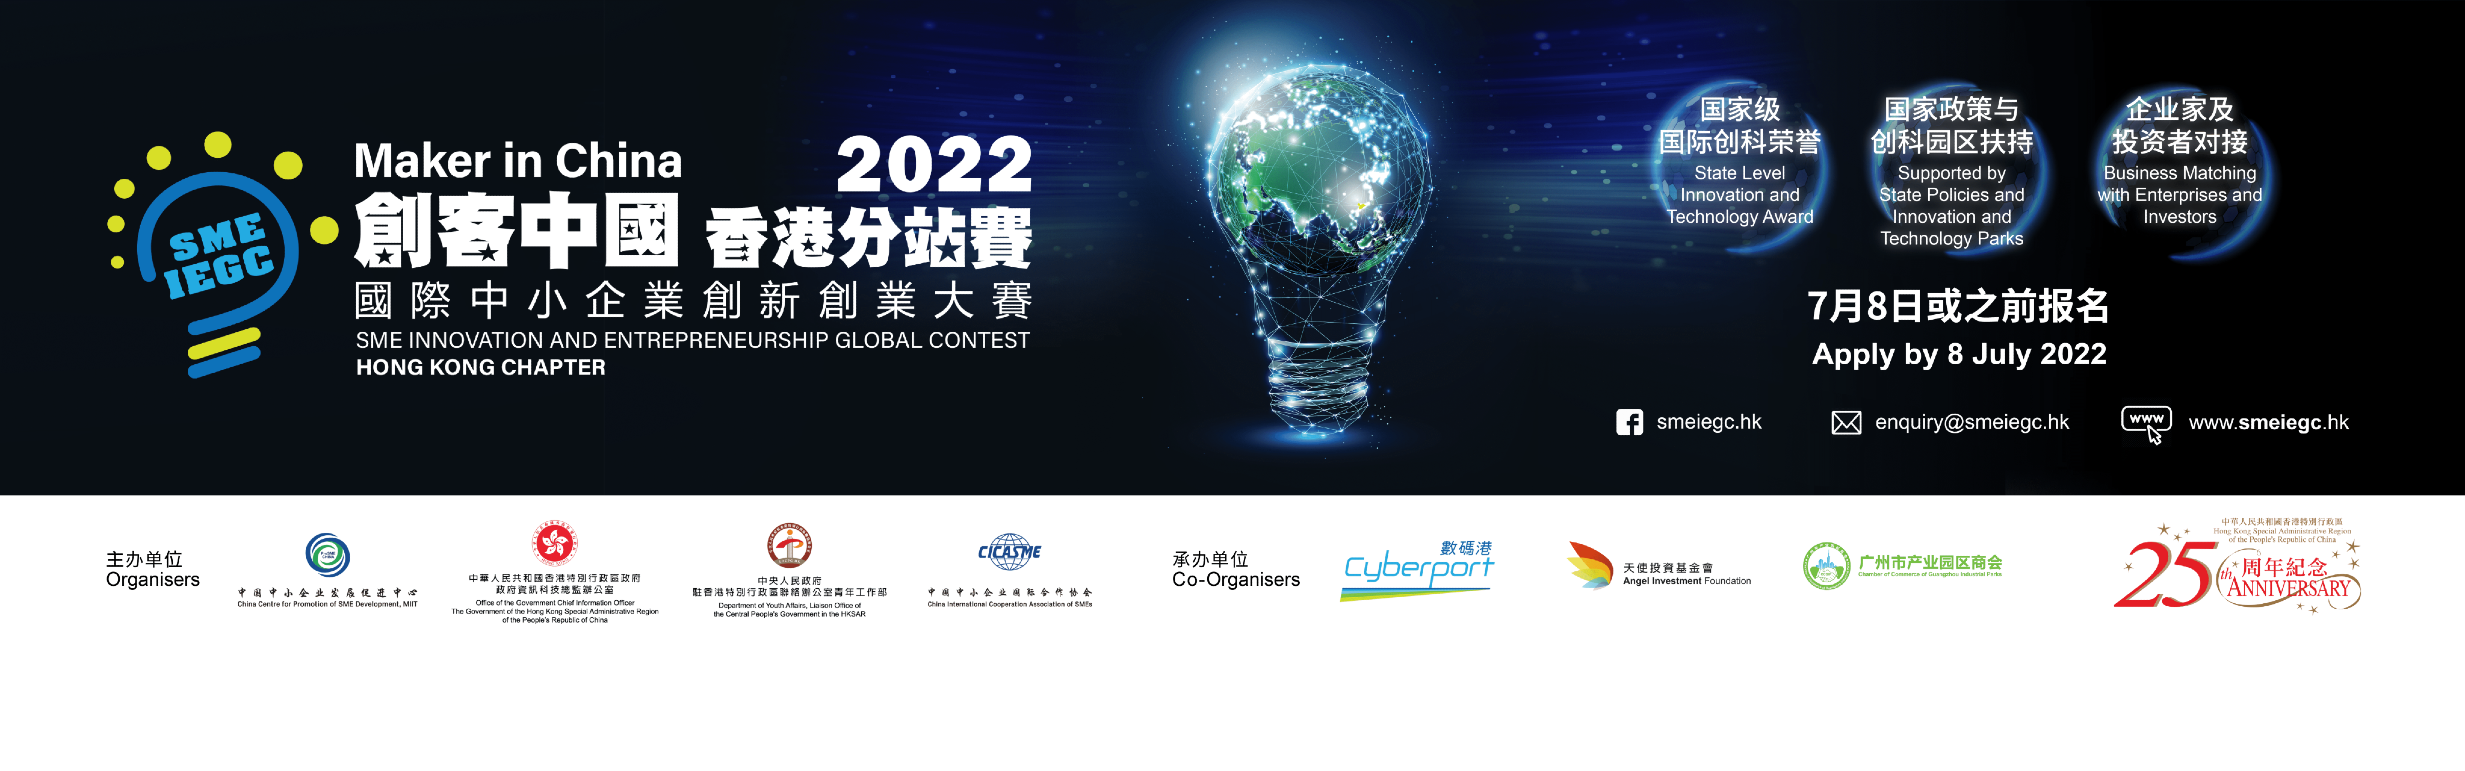 创客中国香港分站赛 2022 - 国际中小企业创新创业大赛